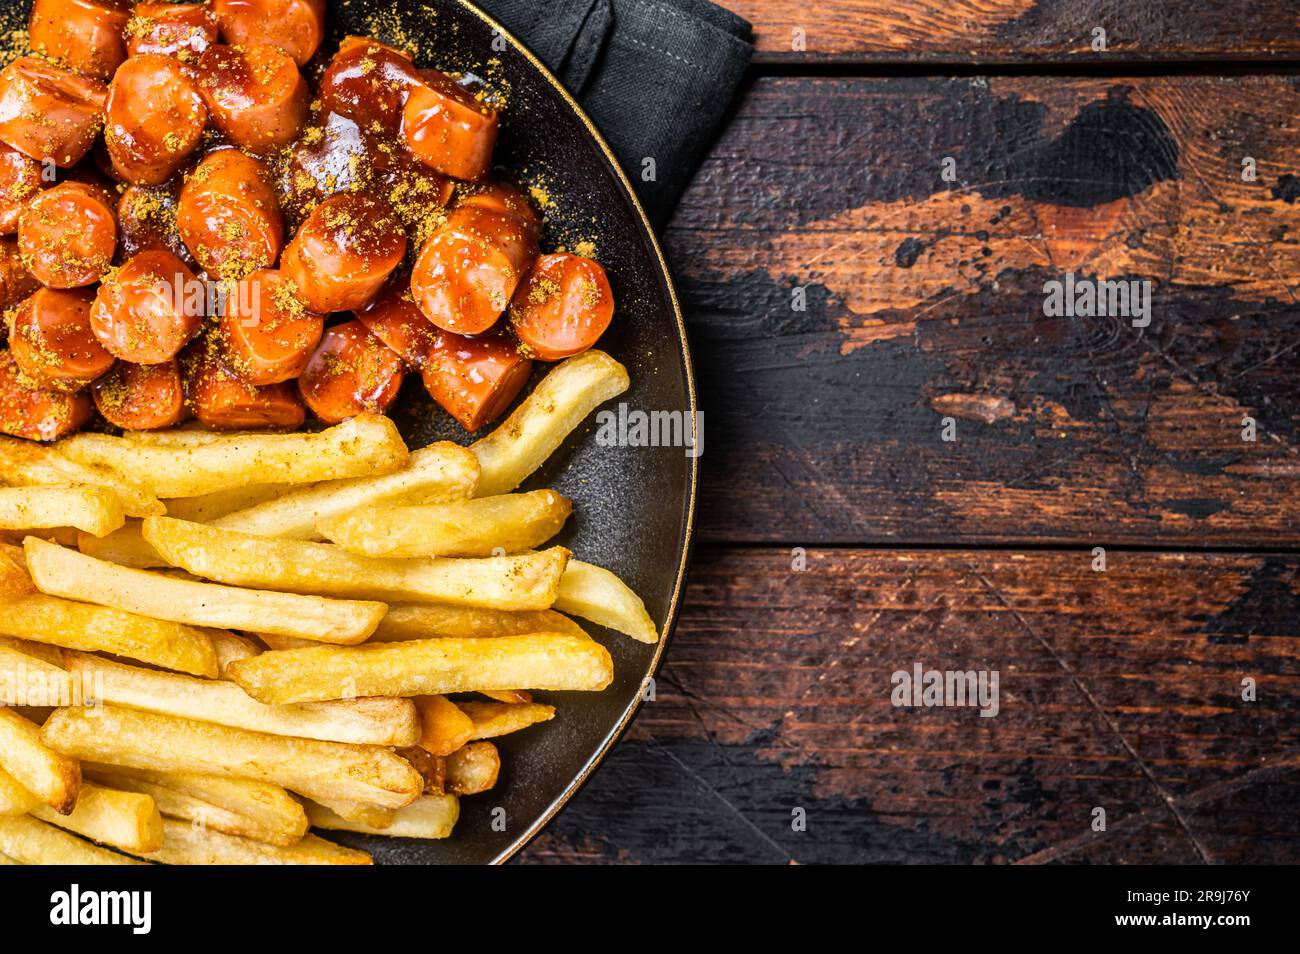 Repas de currywurst allemand, curry wurst avec frites servi dans un plat. Arrière-plan en bois. Vue de dessus. Banque D'Images